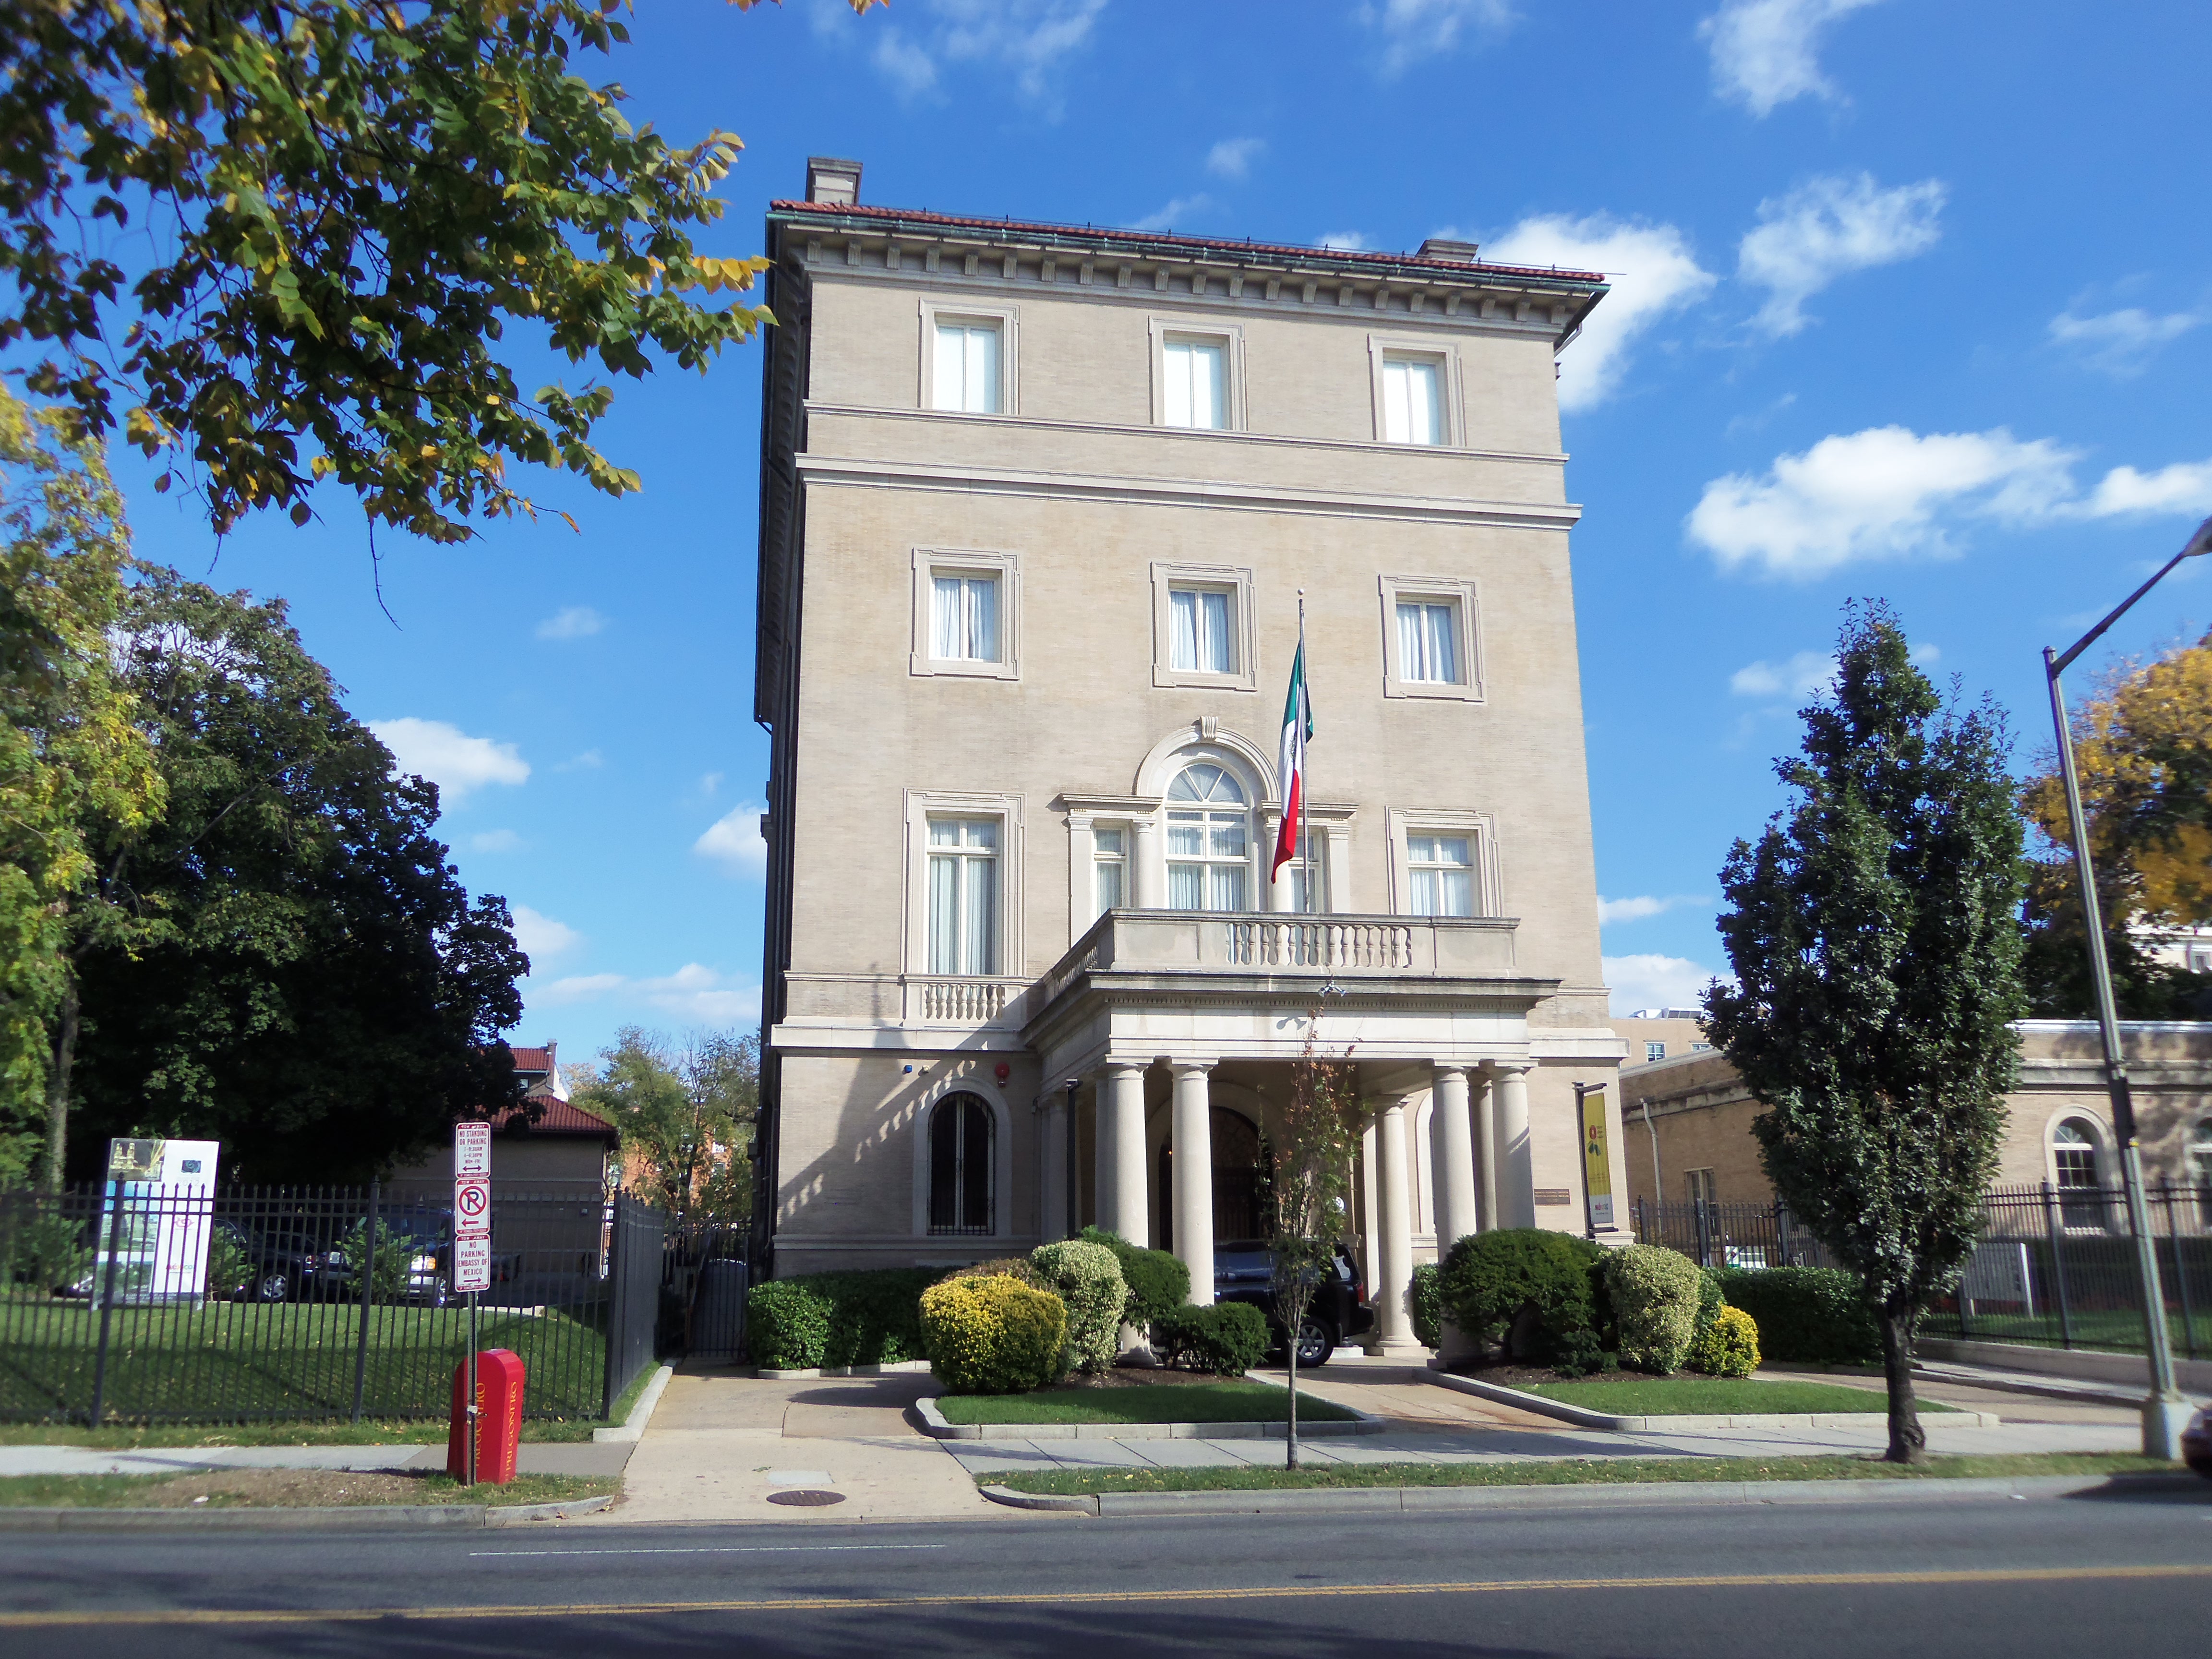 Oficina Consular en Washington, DC.